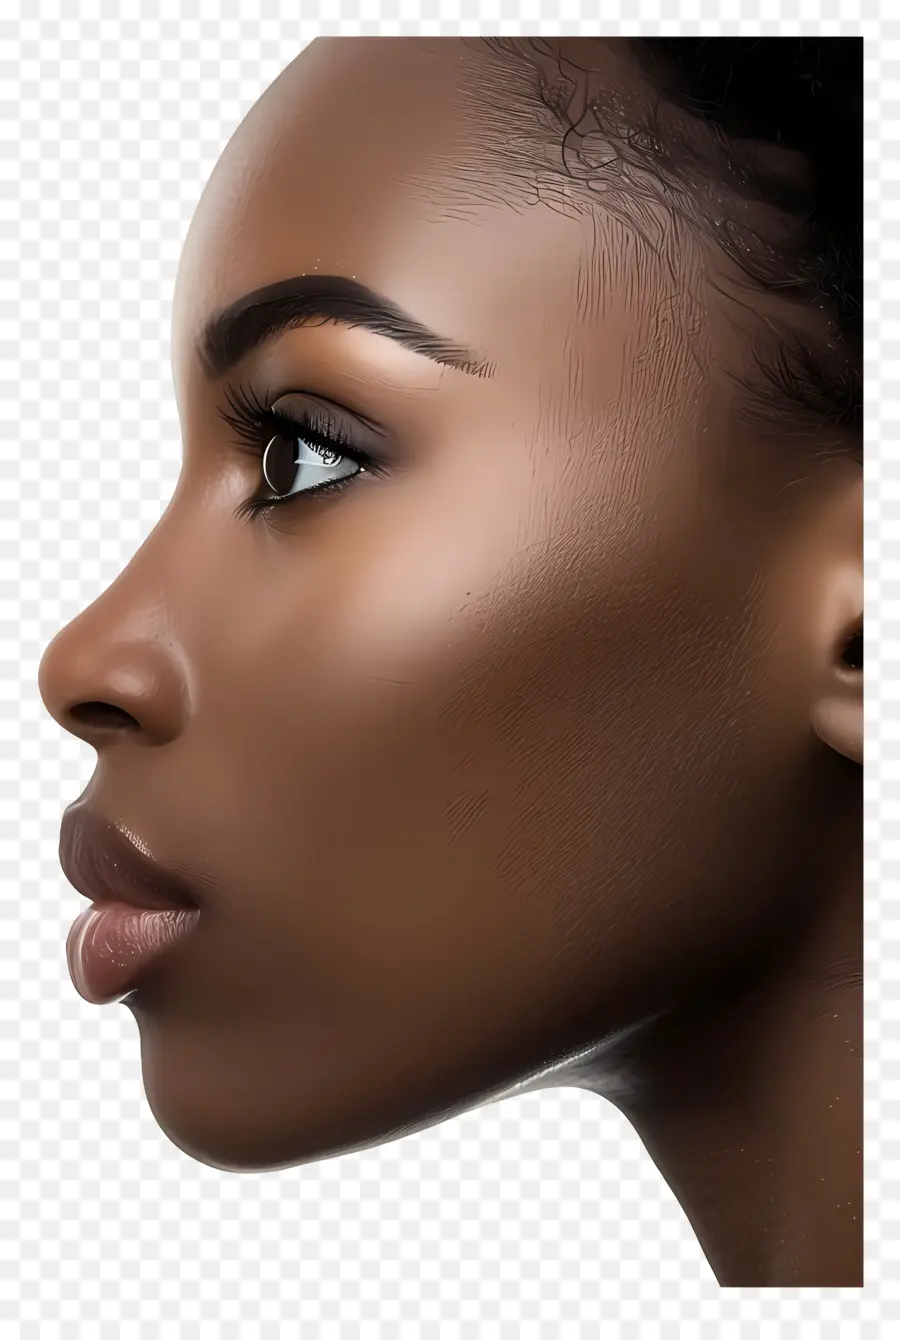 schwarze Frau Gesicht dunkle Haut Frau offenes Gesicht Make -up - Frau mit dunkler Haut, Augen, Nasenschatten